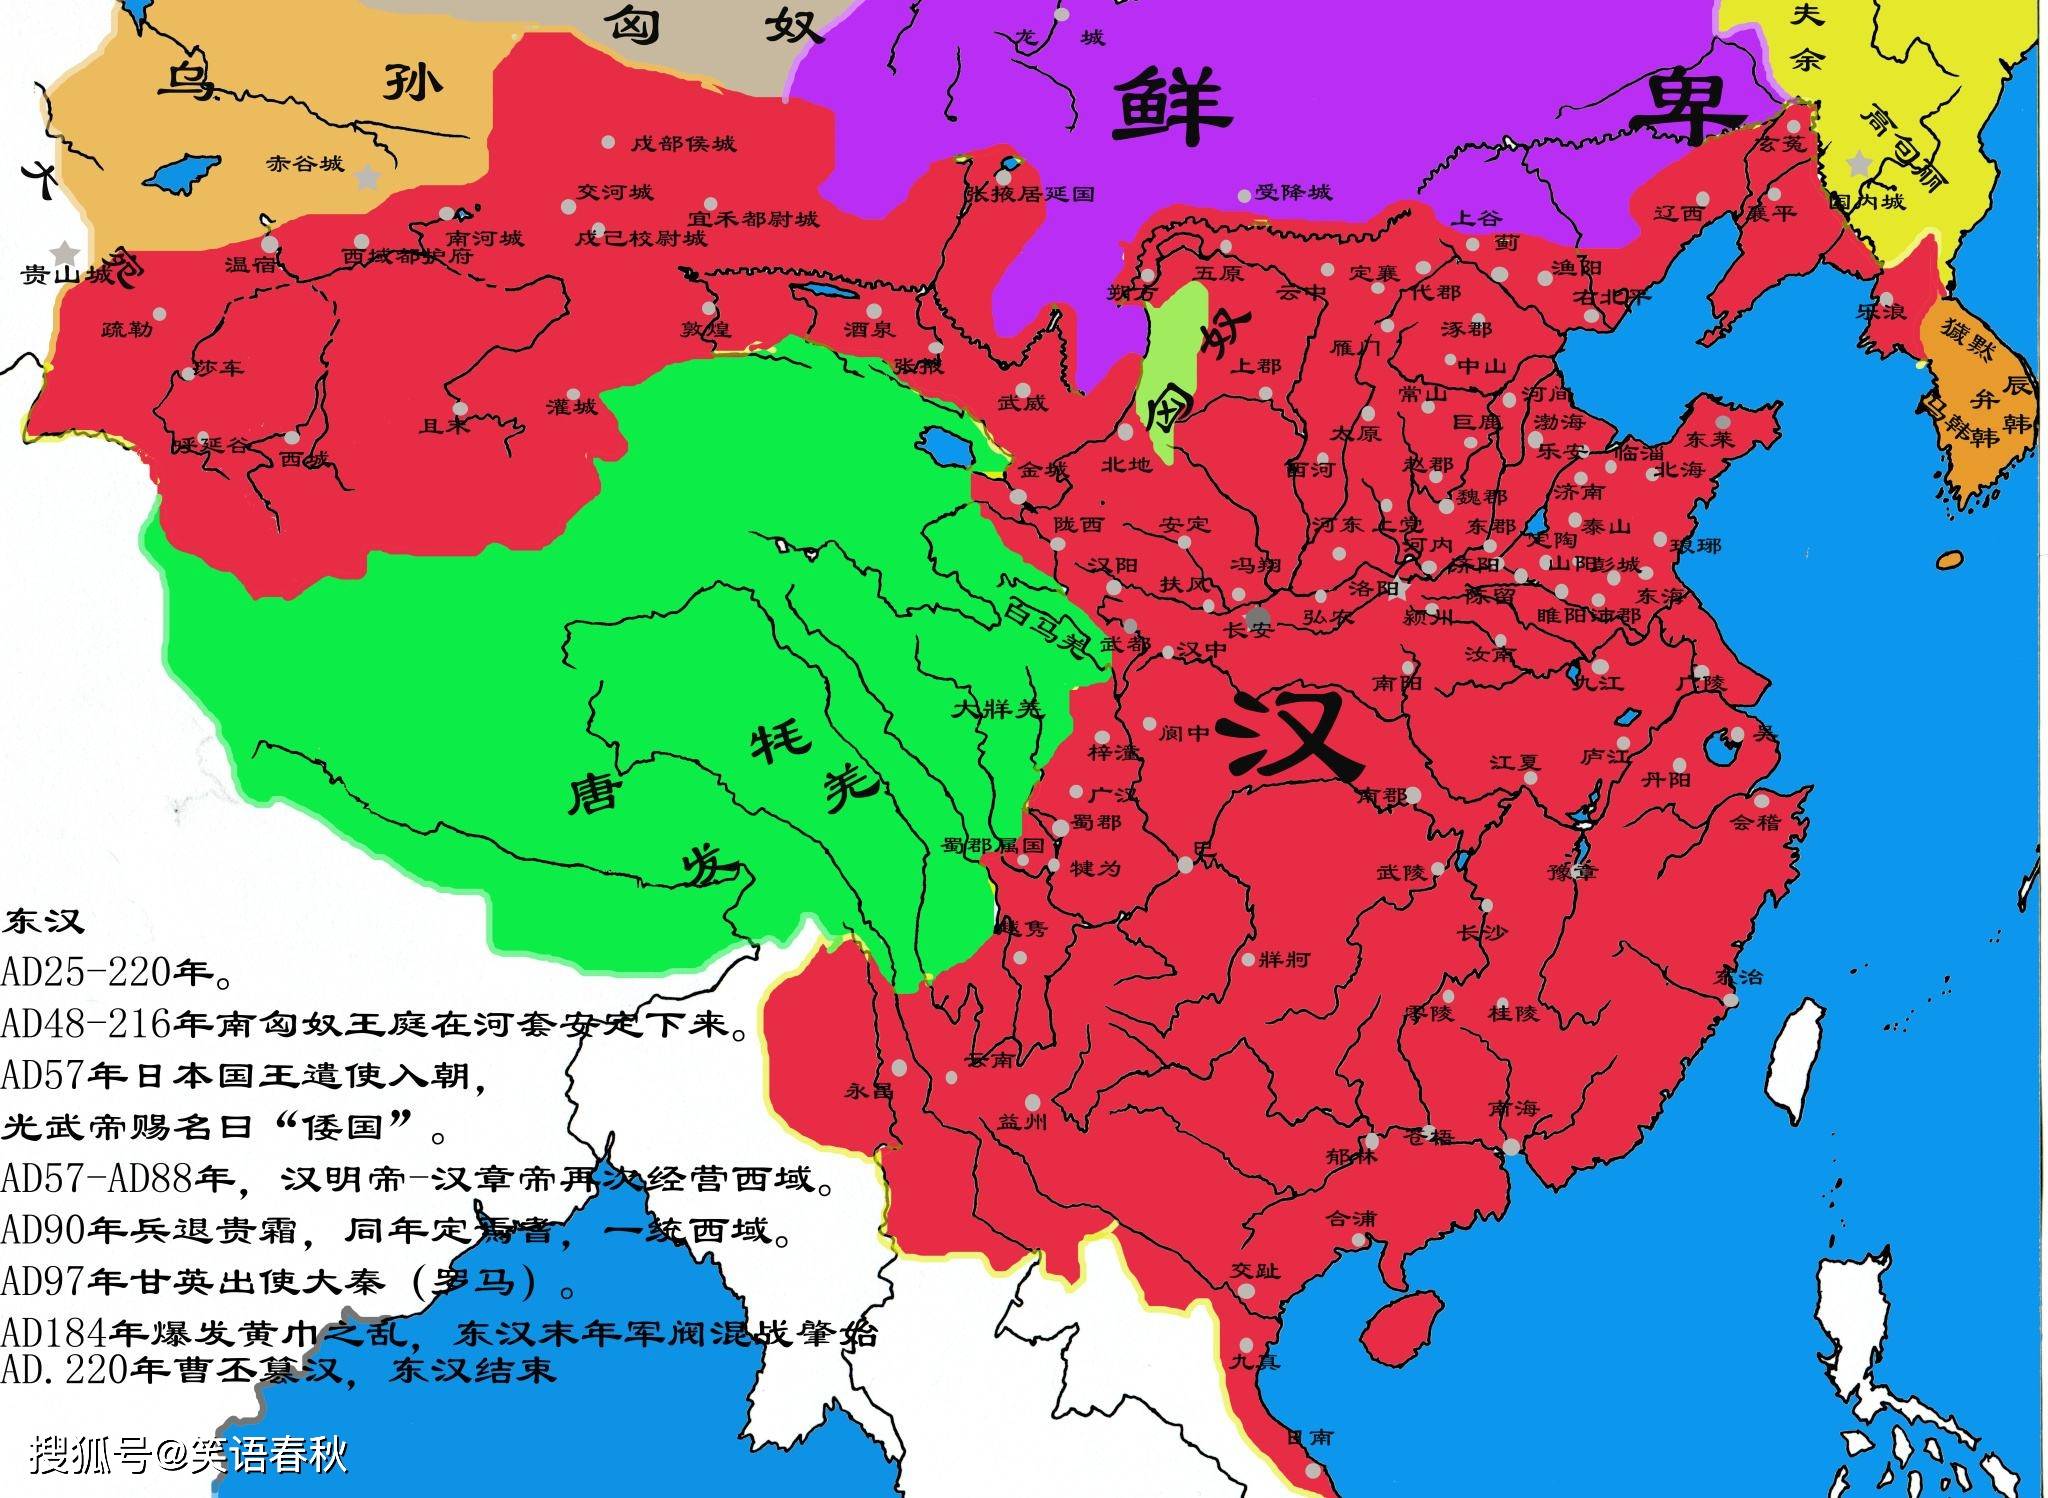 为什么中国古代看上去侵略性不强,却有那么大领土?都是充话费送的吗?